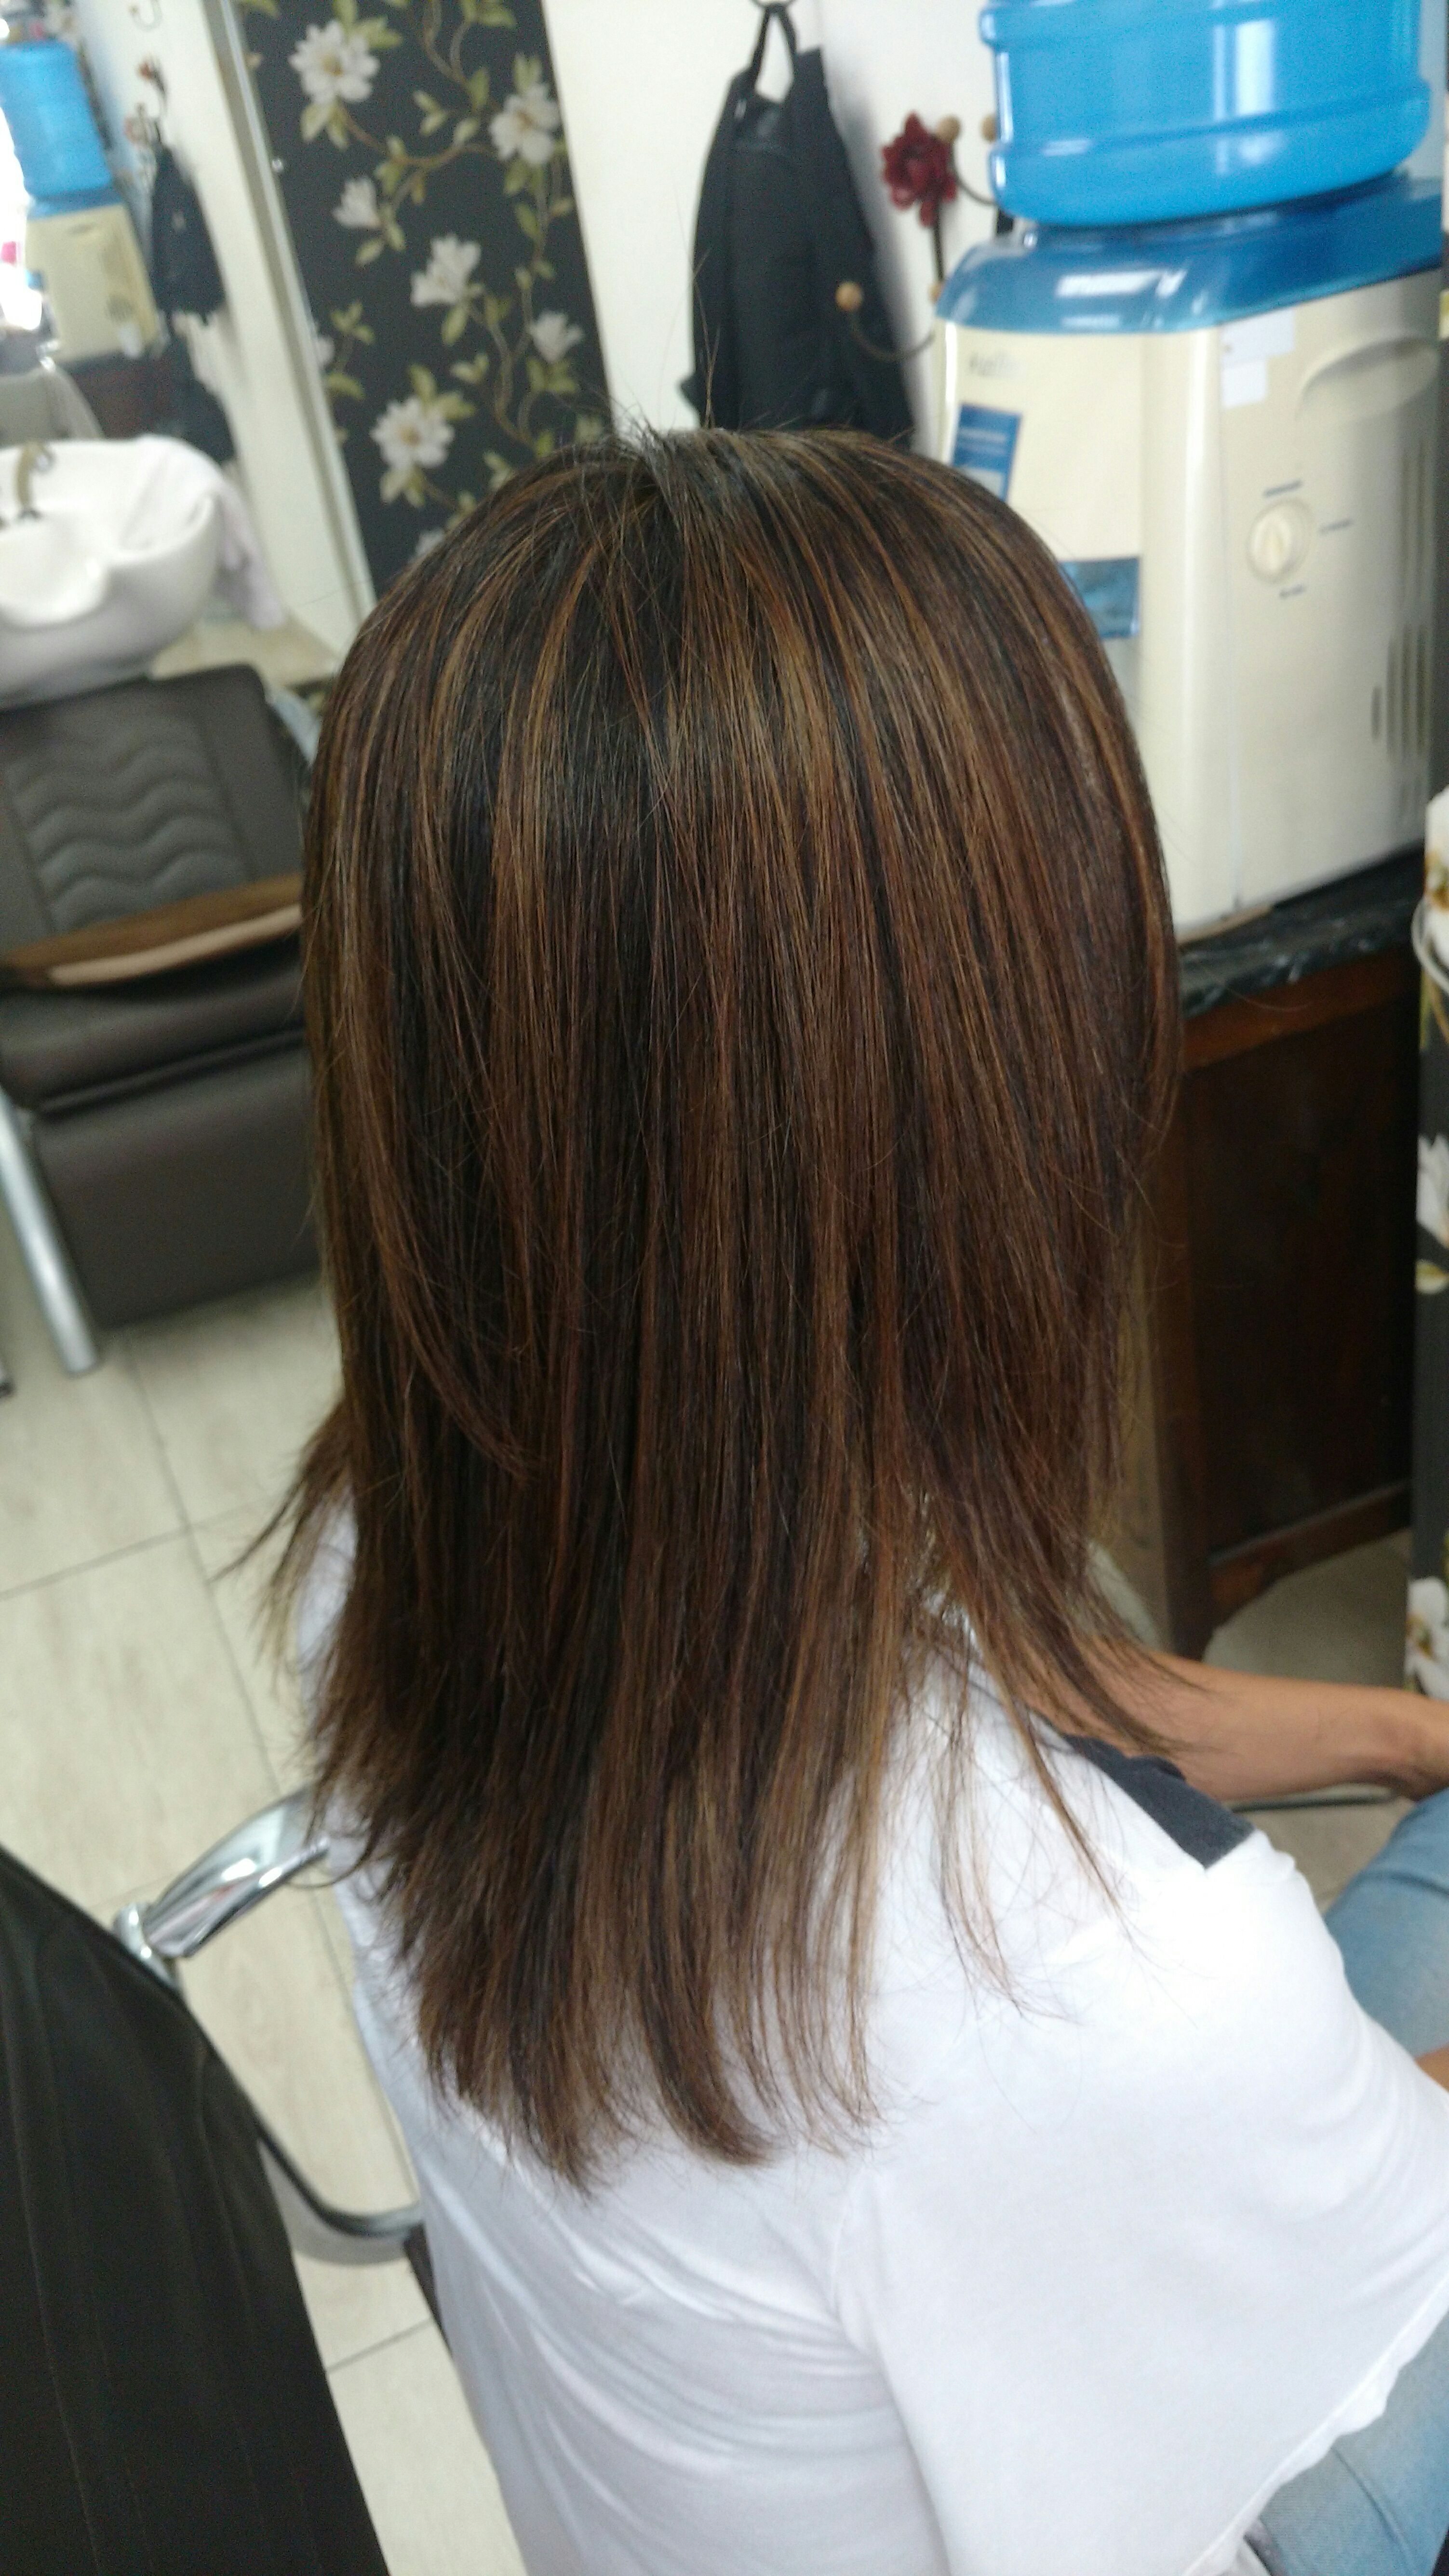 cabelo estudante (visagista) cabeleireiro(a)